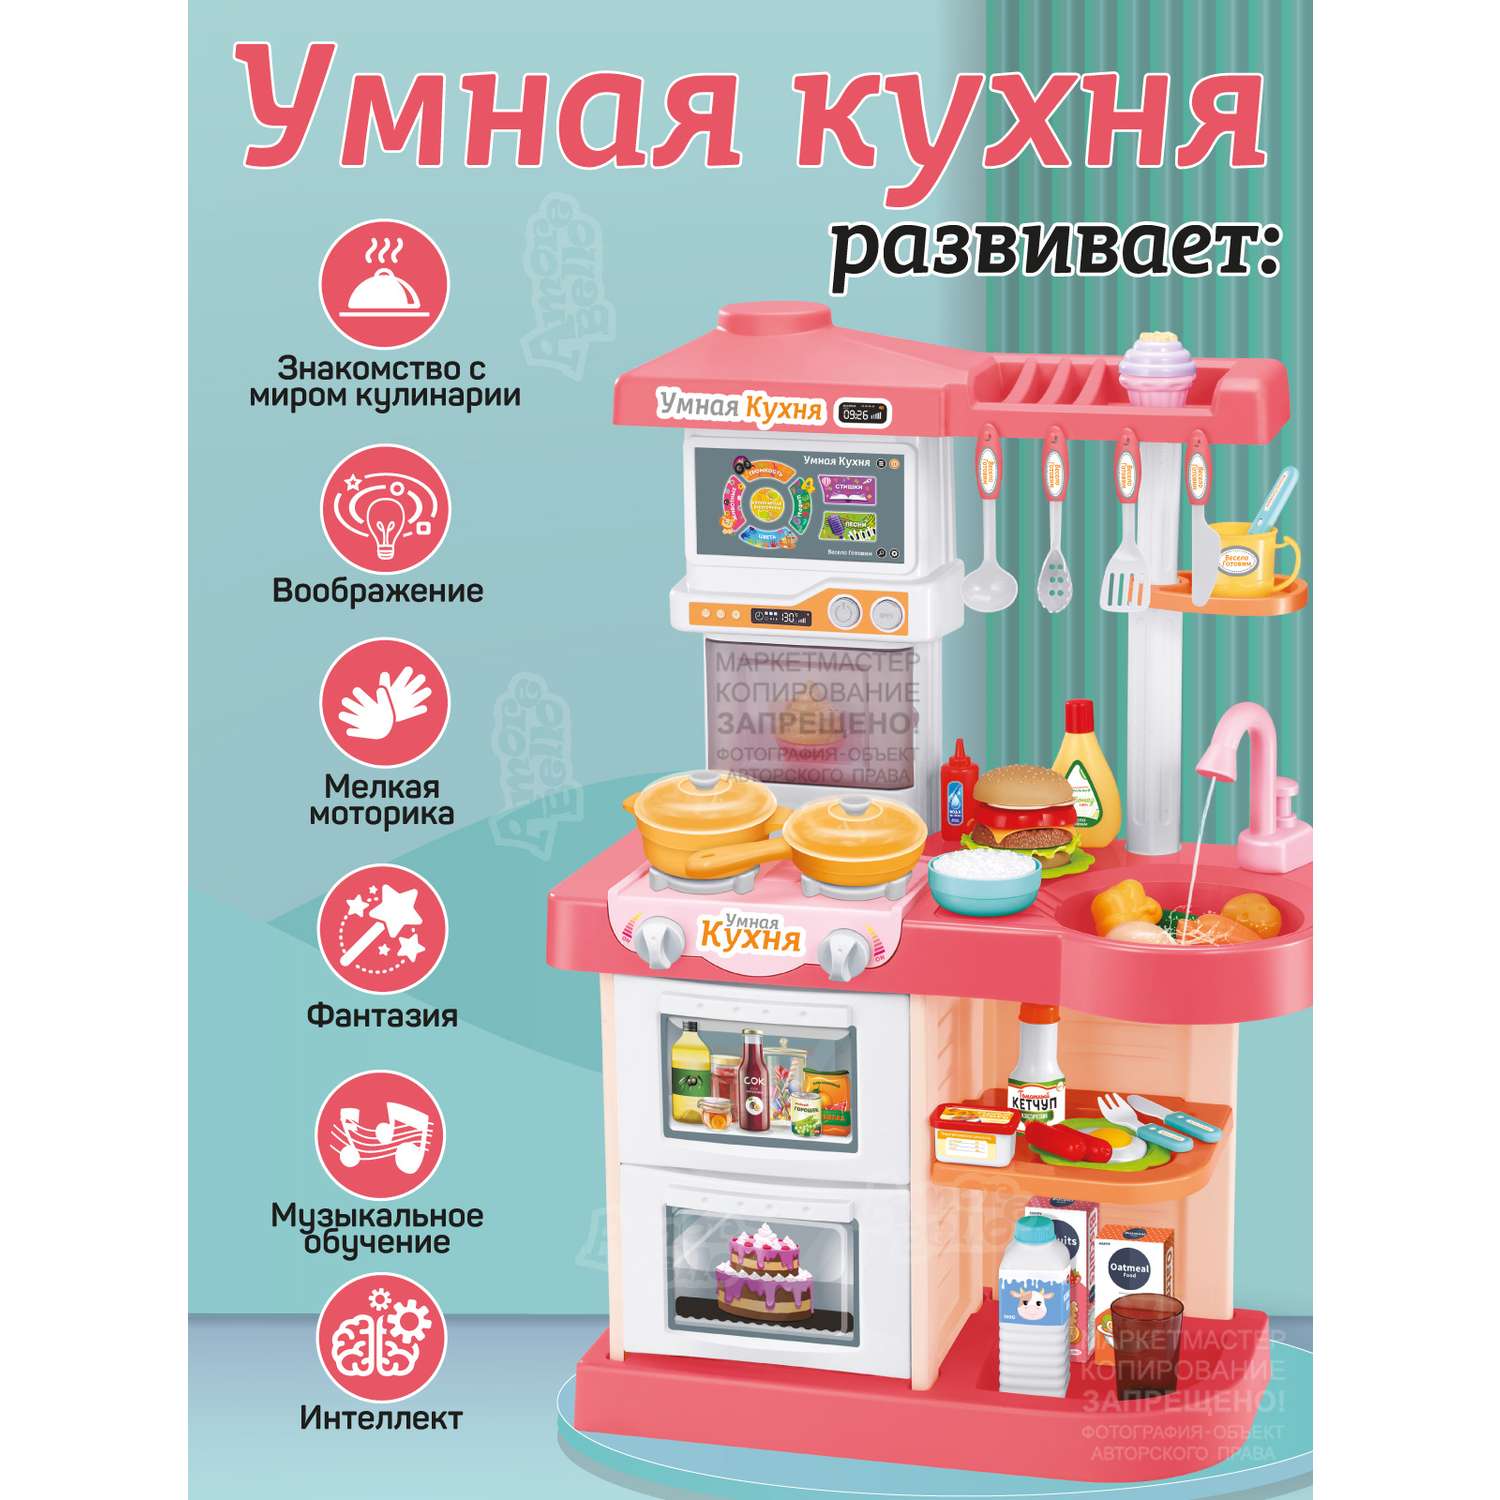 Игровой набор детский AMORE BELLO Умная Кухня с пультом с паром и кран с водой игрушечные продукты и посуда JB0209161 - фото 4